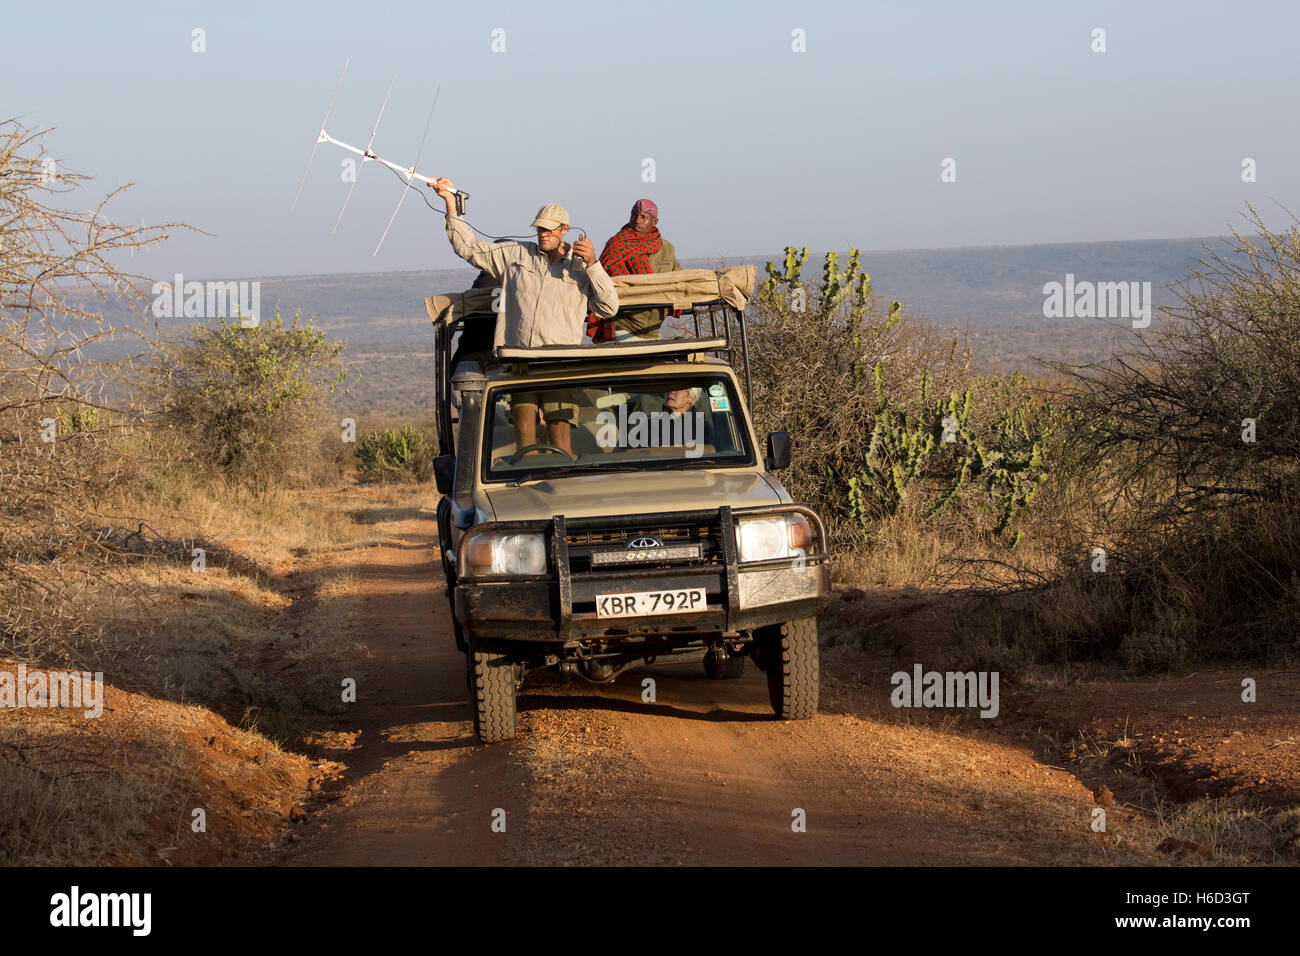 Le suivi radio chercheur lycaons de Laikipia au Kenya sauvage du véhicule Banque D'Images